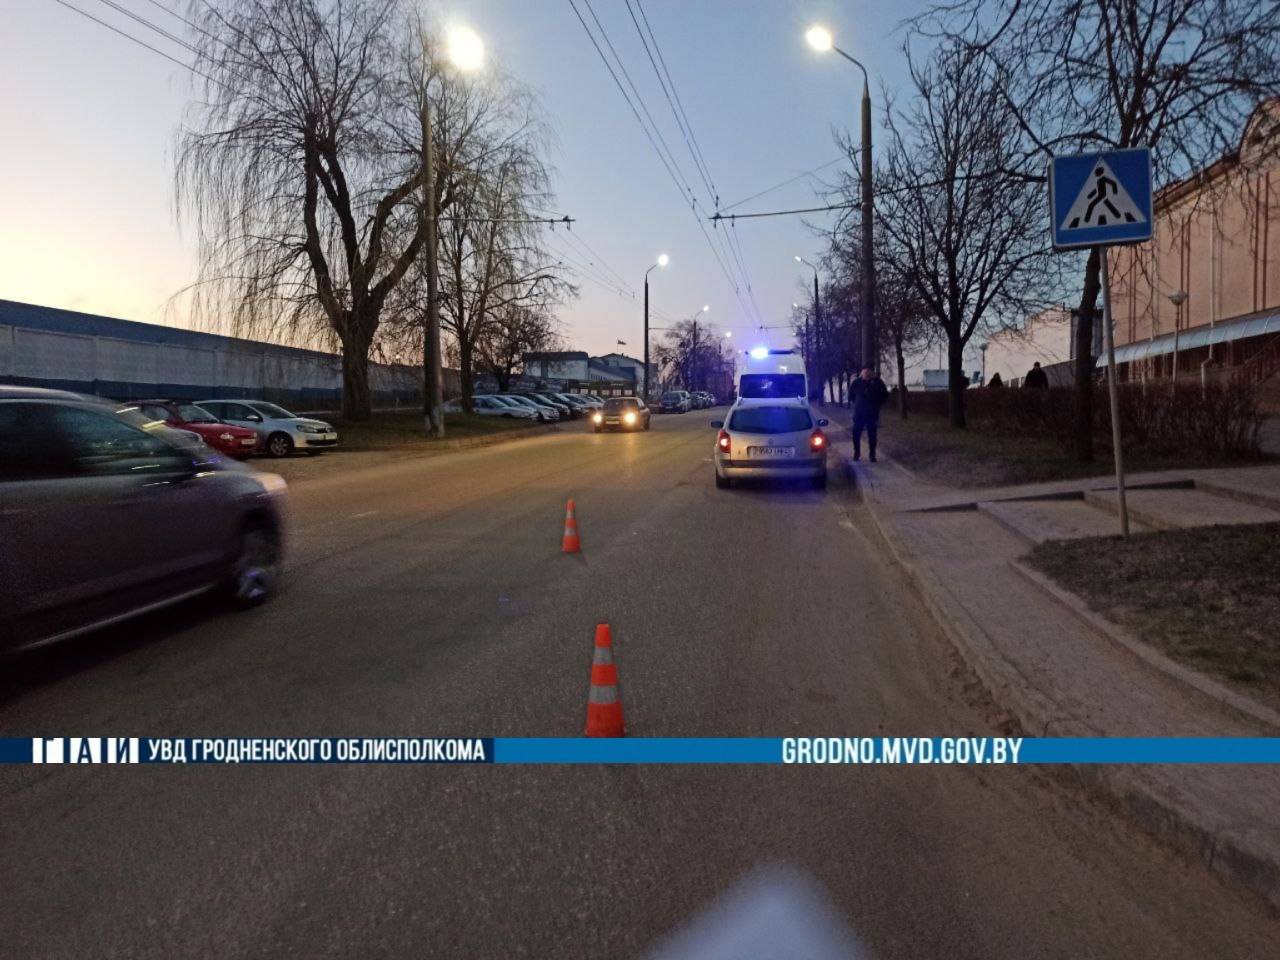 Сбил на полном ходу: в Гродно на пешеходном переходе пенсионер попал под колеса машины